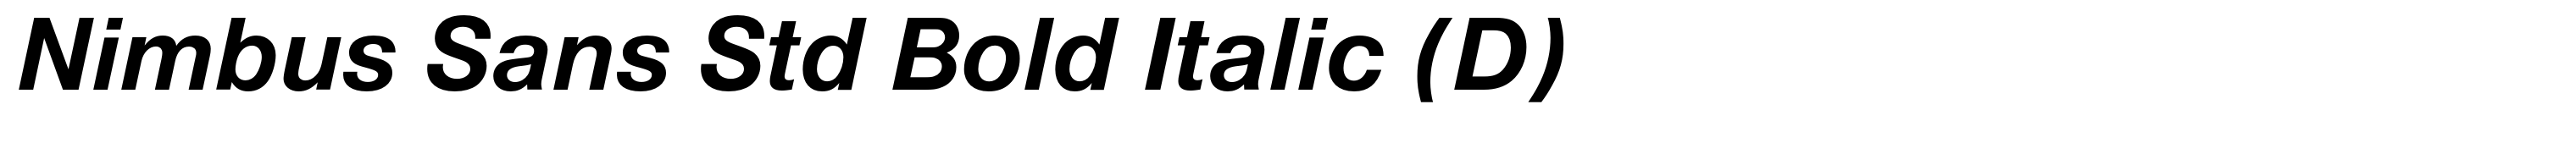 Nimbus Sans Std Bold Italic (D)